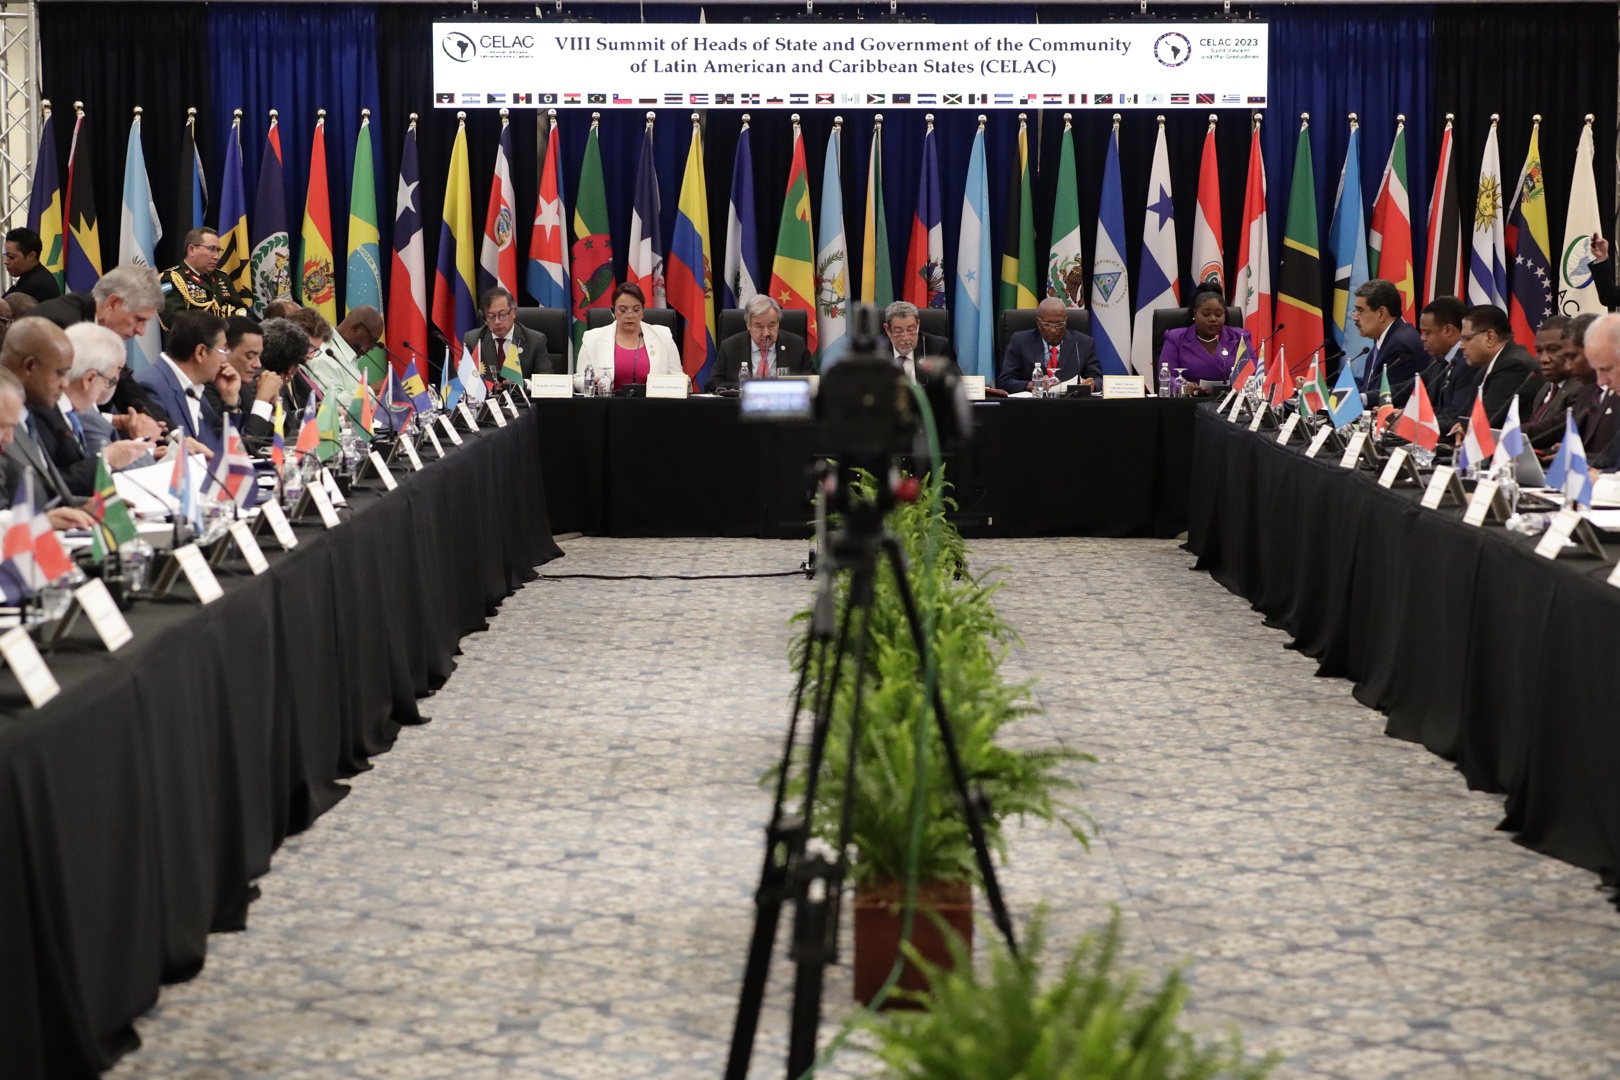 la viii cumbre de la celac pone de manifiesto las diferencias políticas de latinoamérica